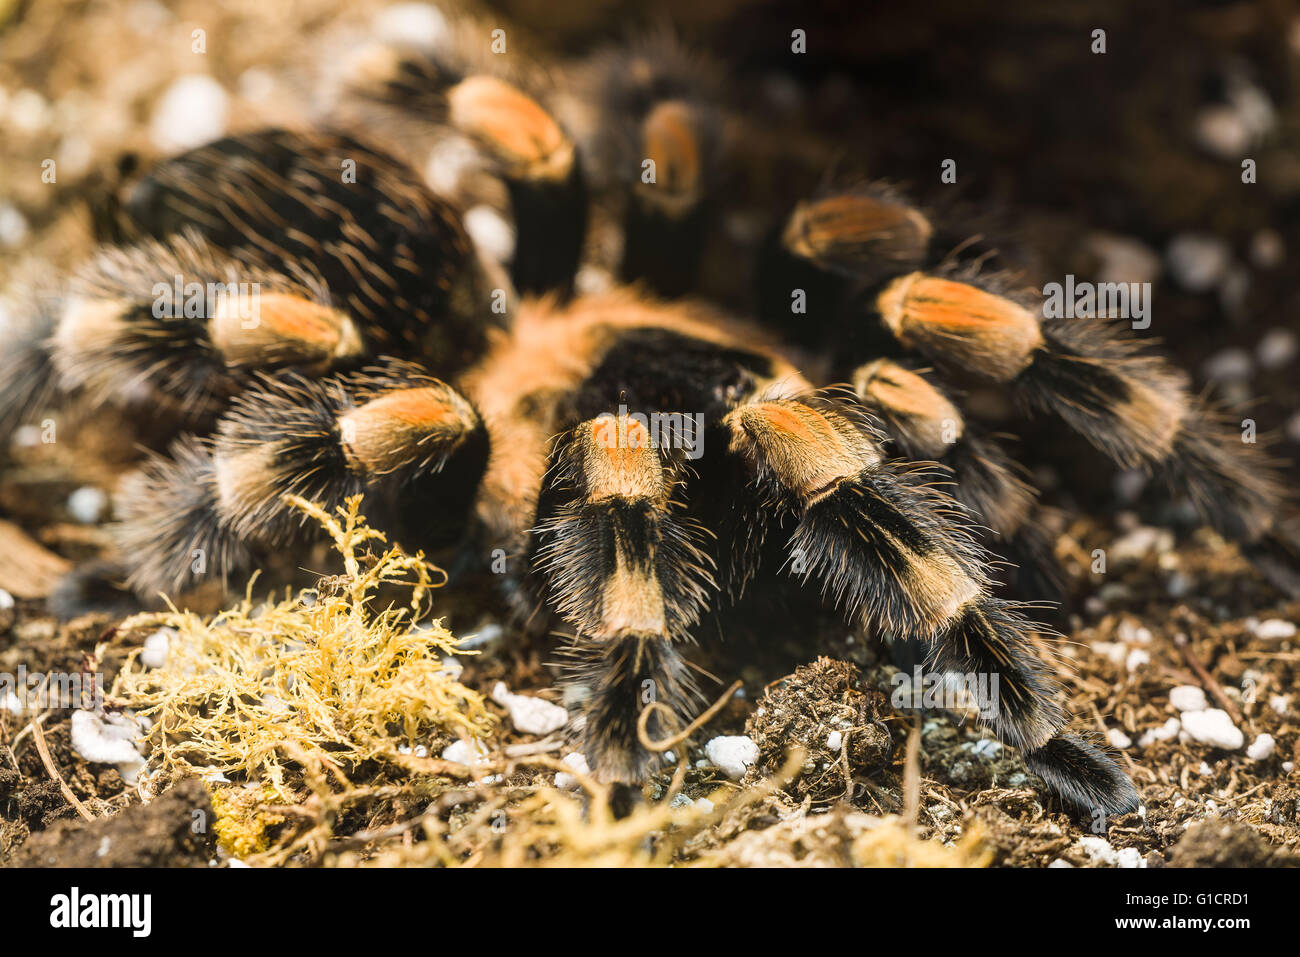 Poisonous tarantula in a terrarium Stock Photo